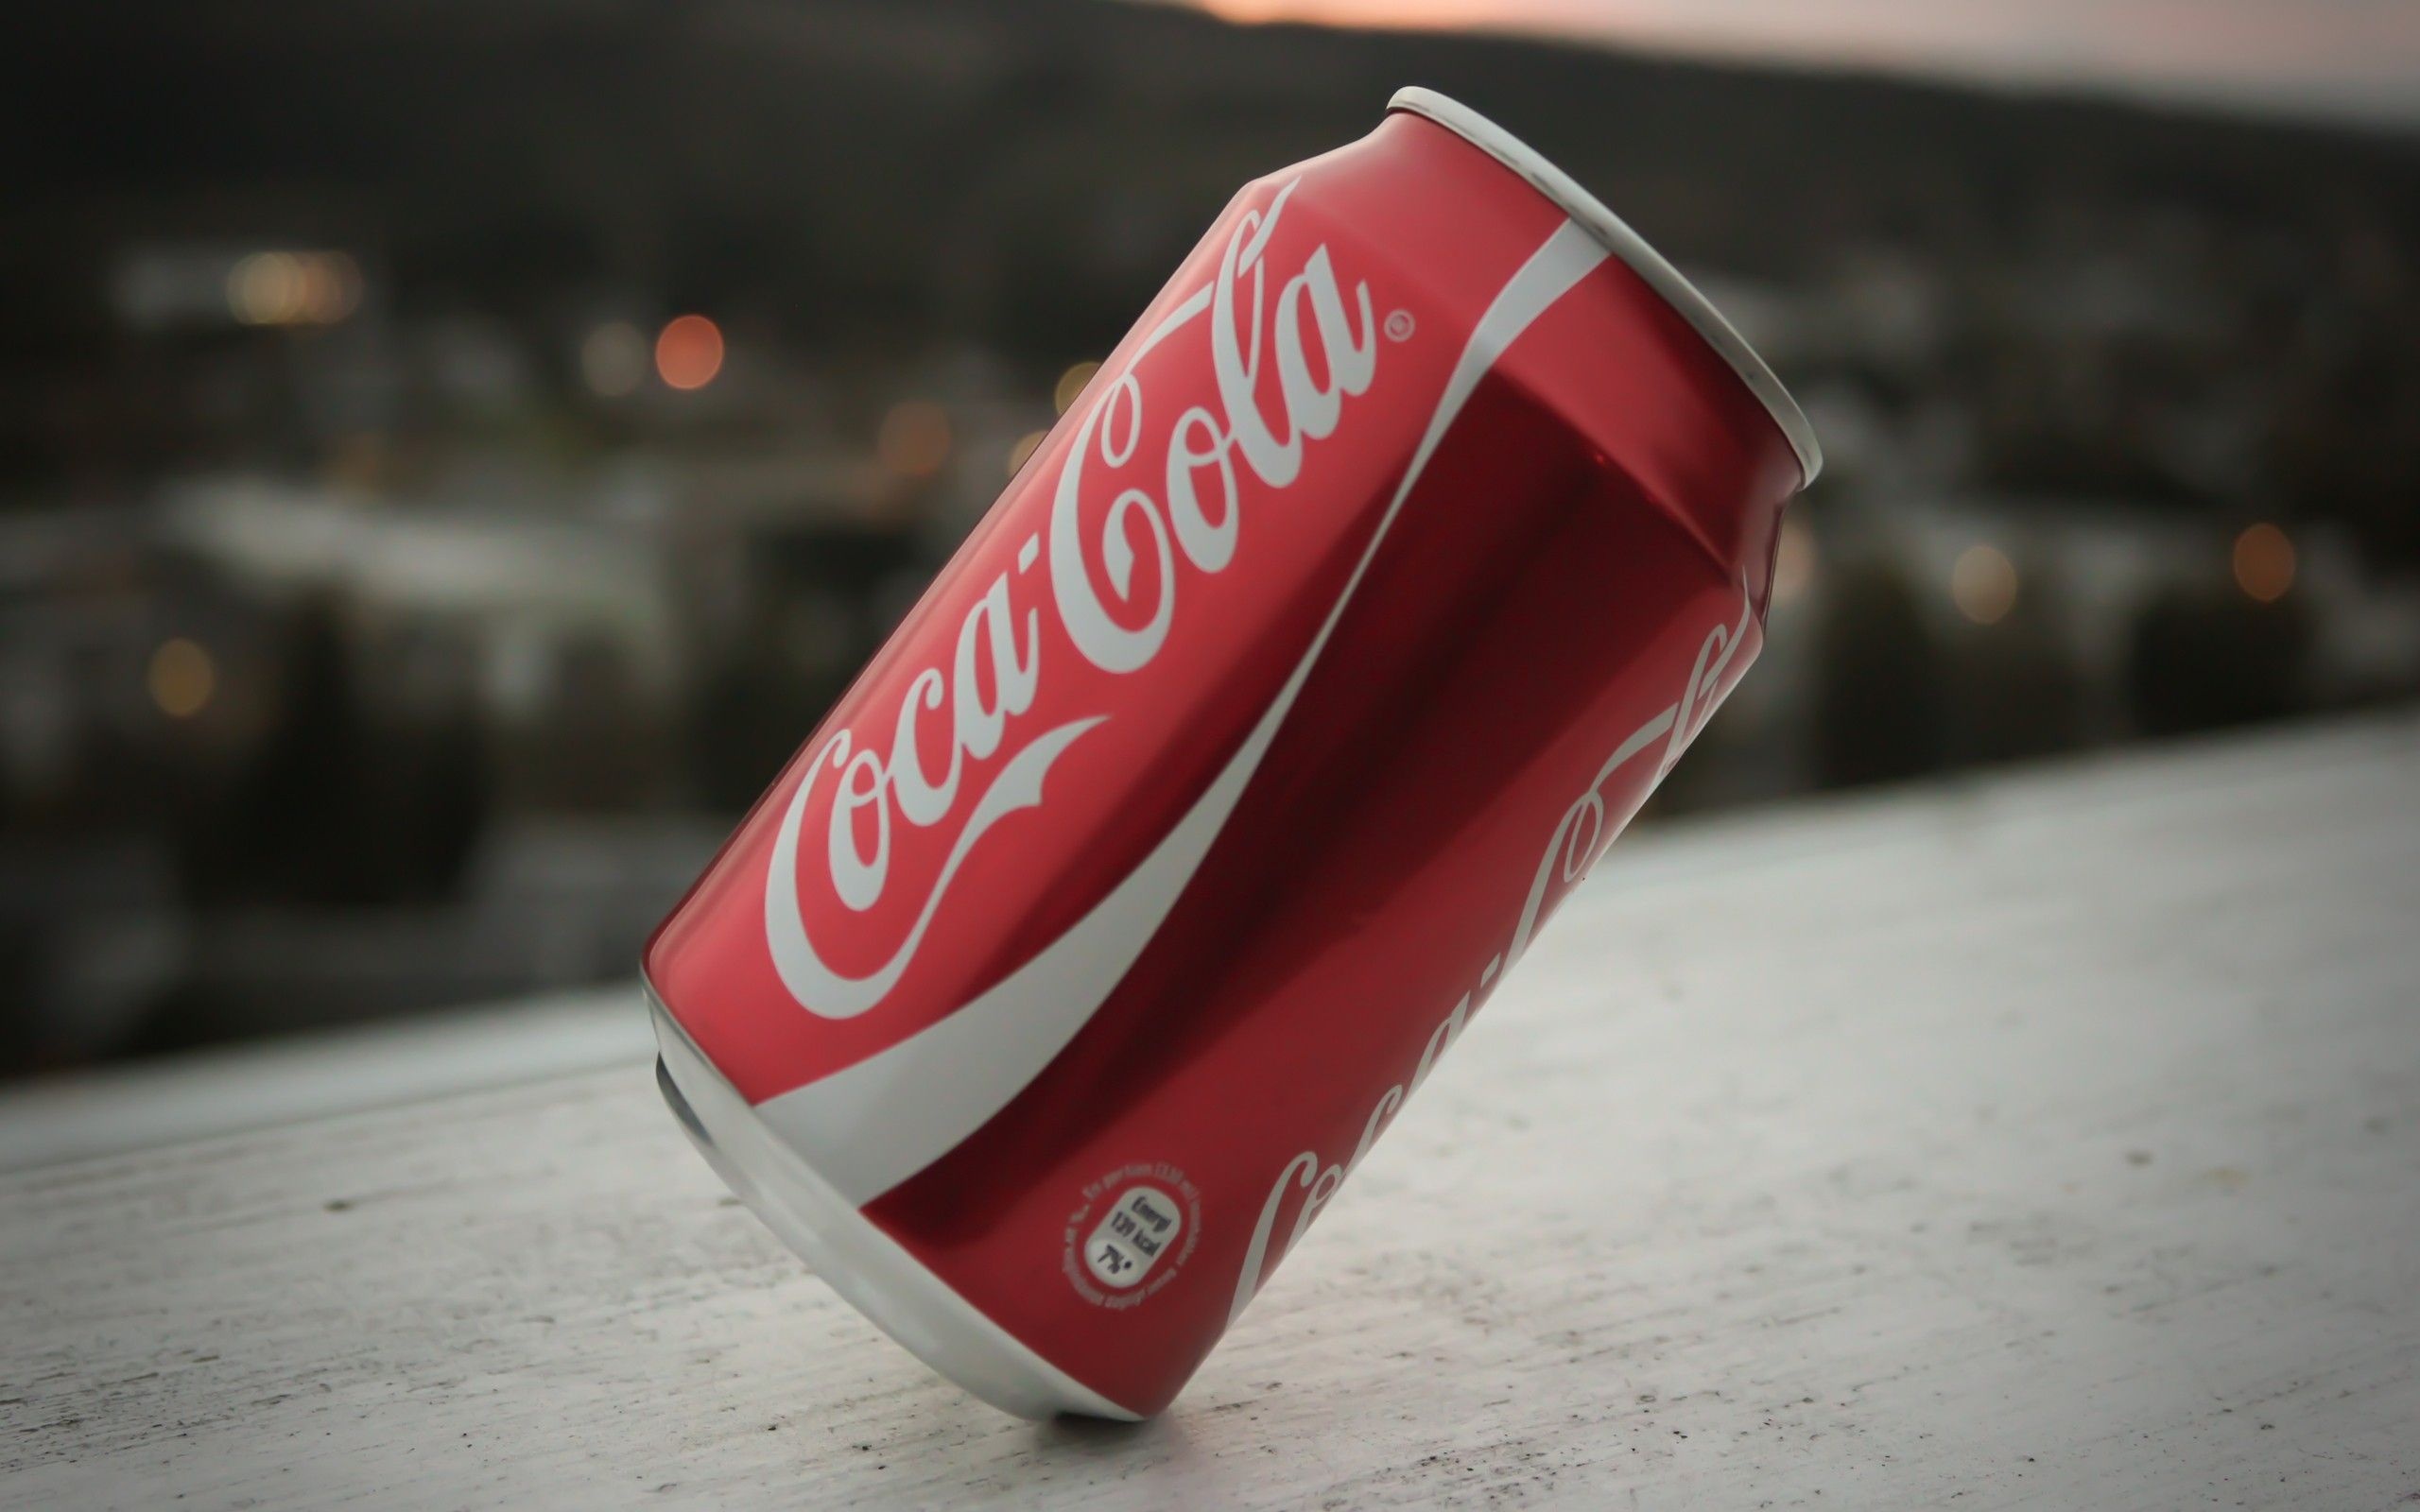 Coca-Cola: Originated in 1886 by an Atlanta pharmacist, John S. Pemberton. 2560x1600 HD Wallpaper.